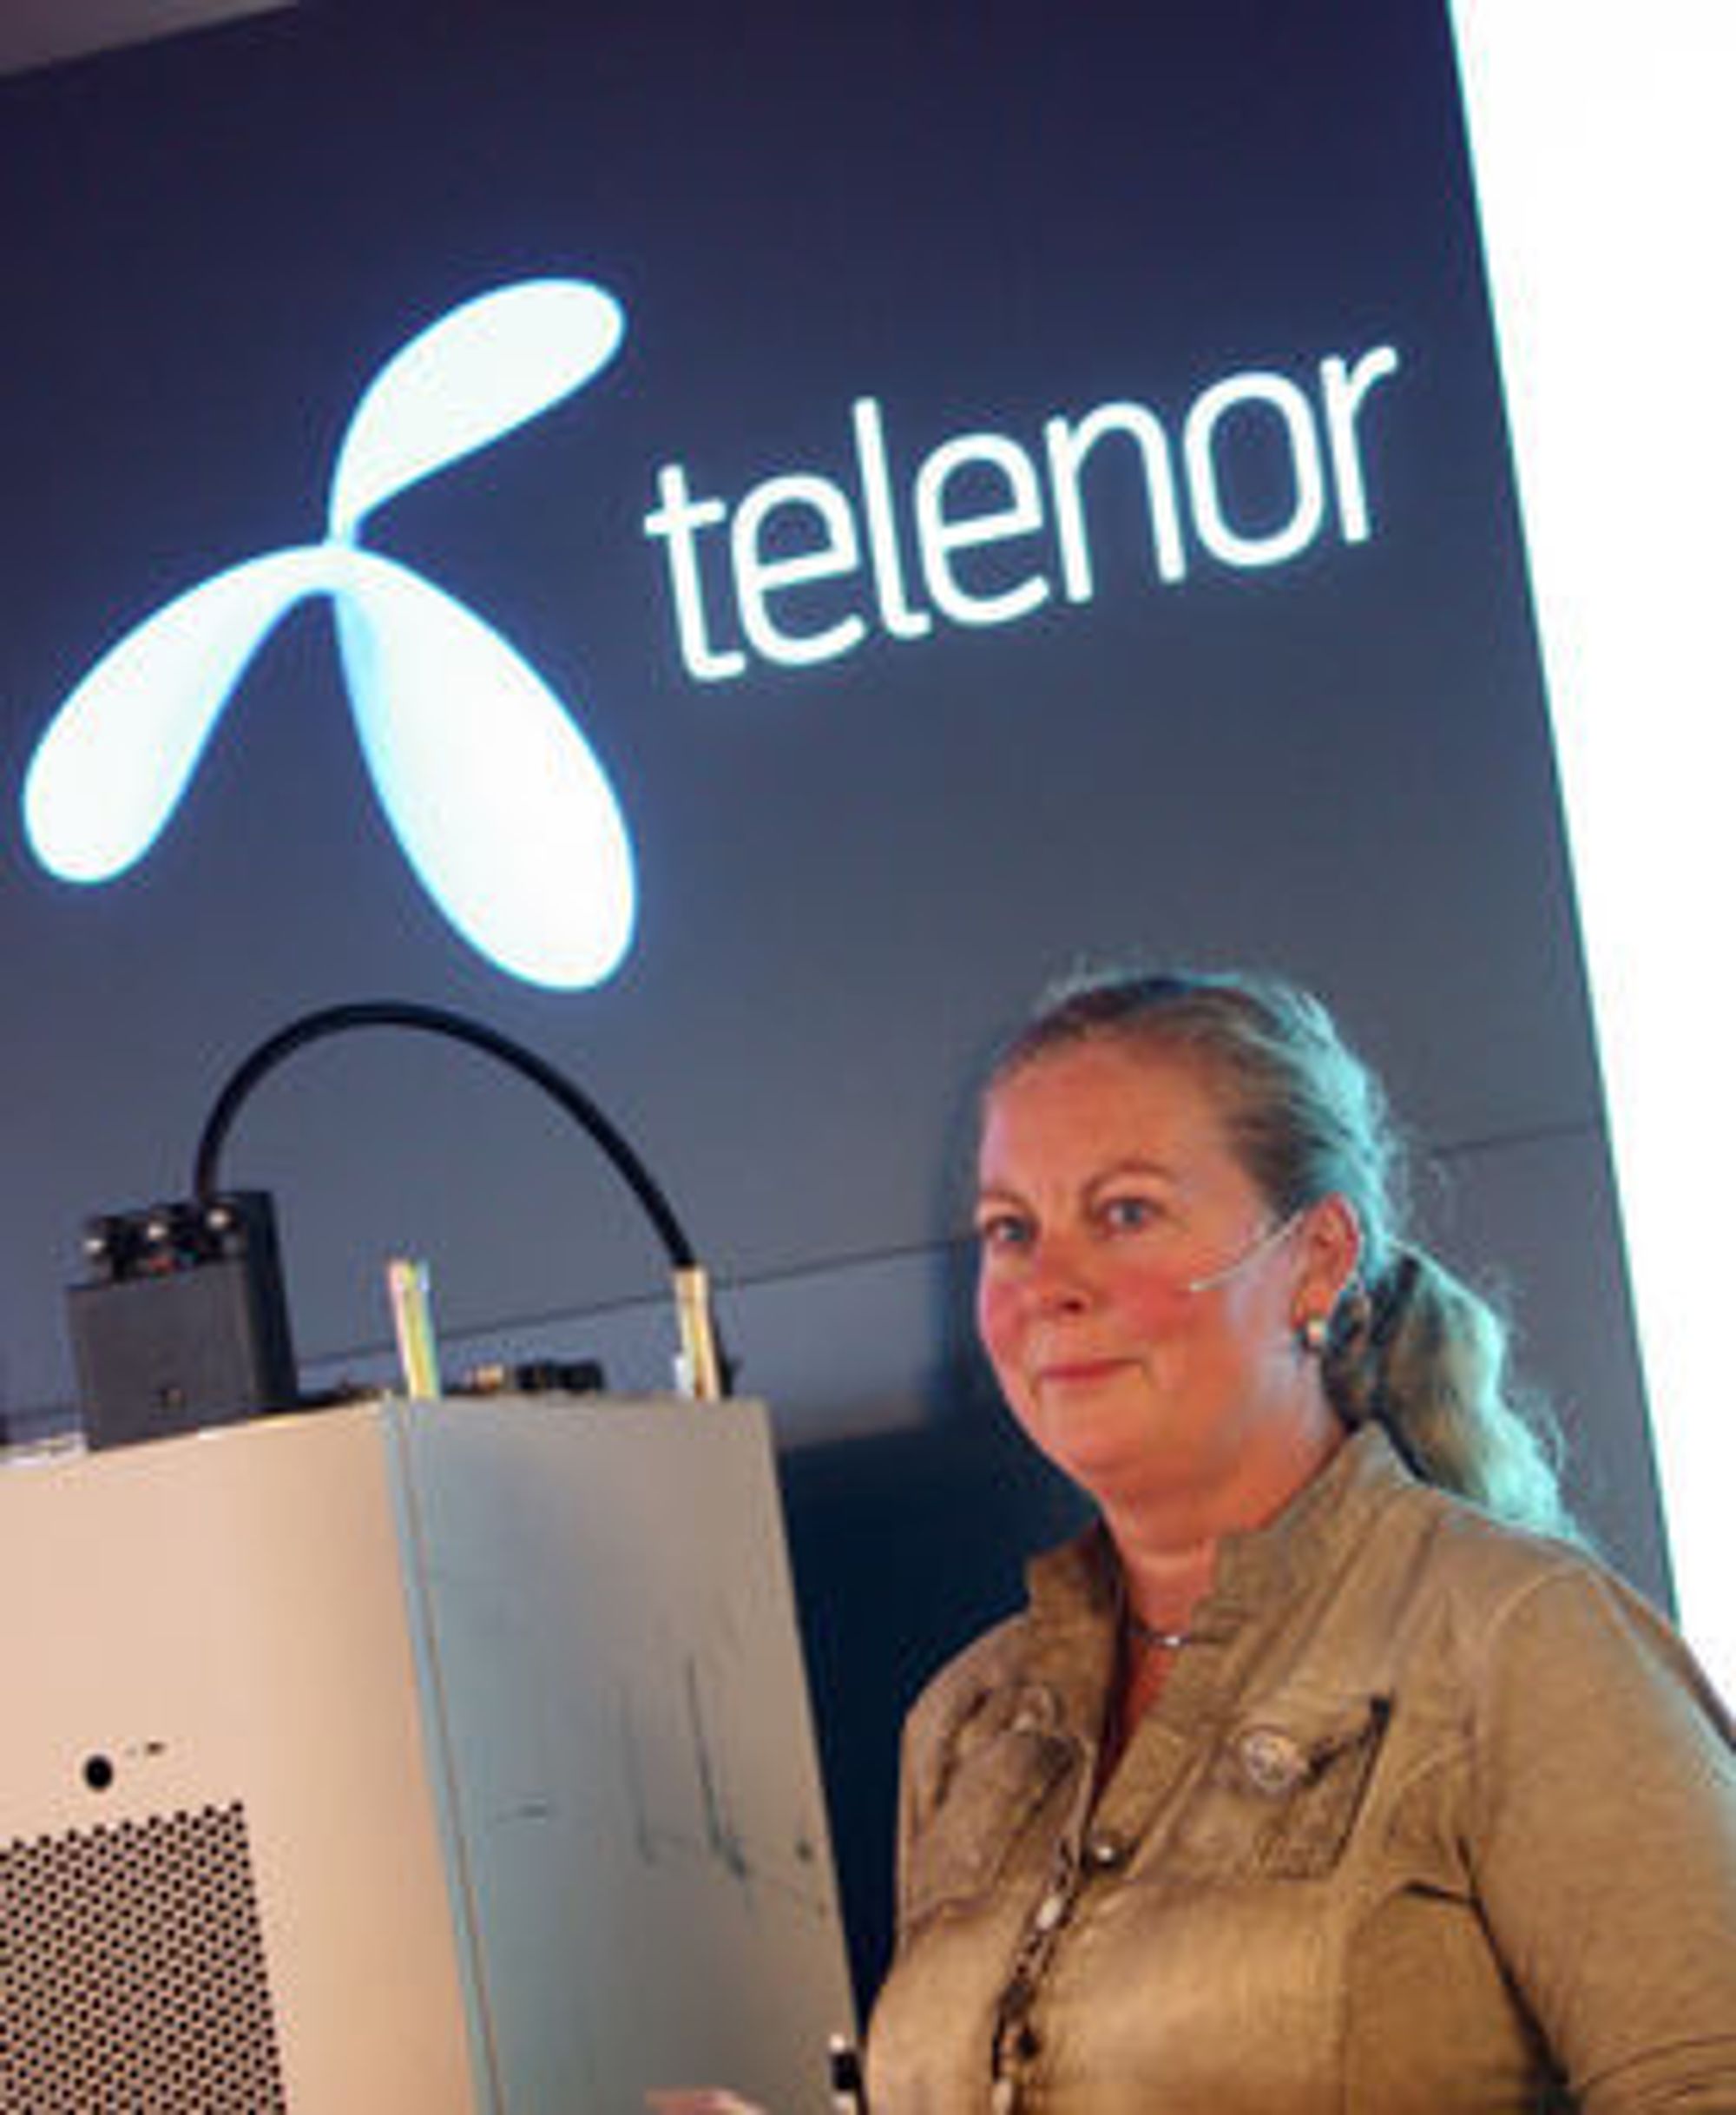 - At bransjen samarbeider om mobil lommebok er fordelaktig for kundene, sier Telenor-direktør Berit Svendsen.